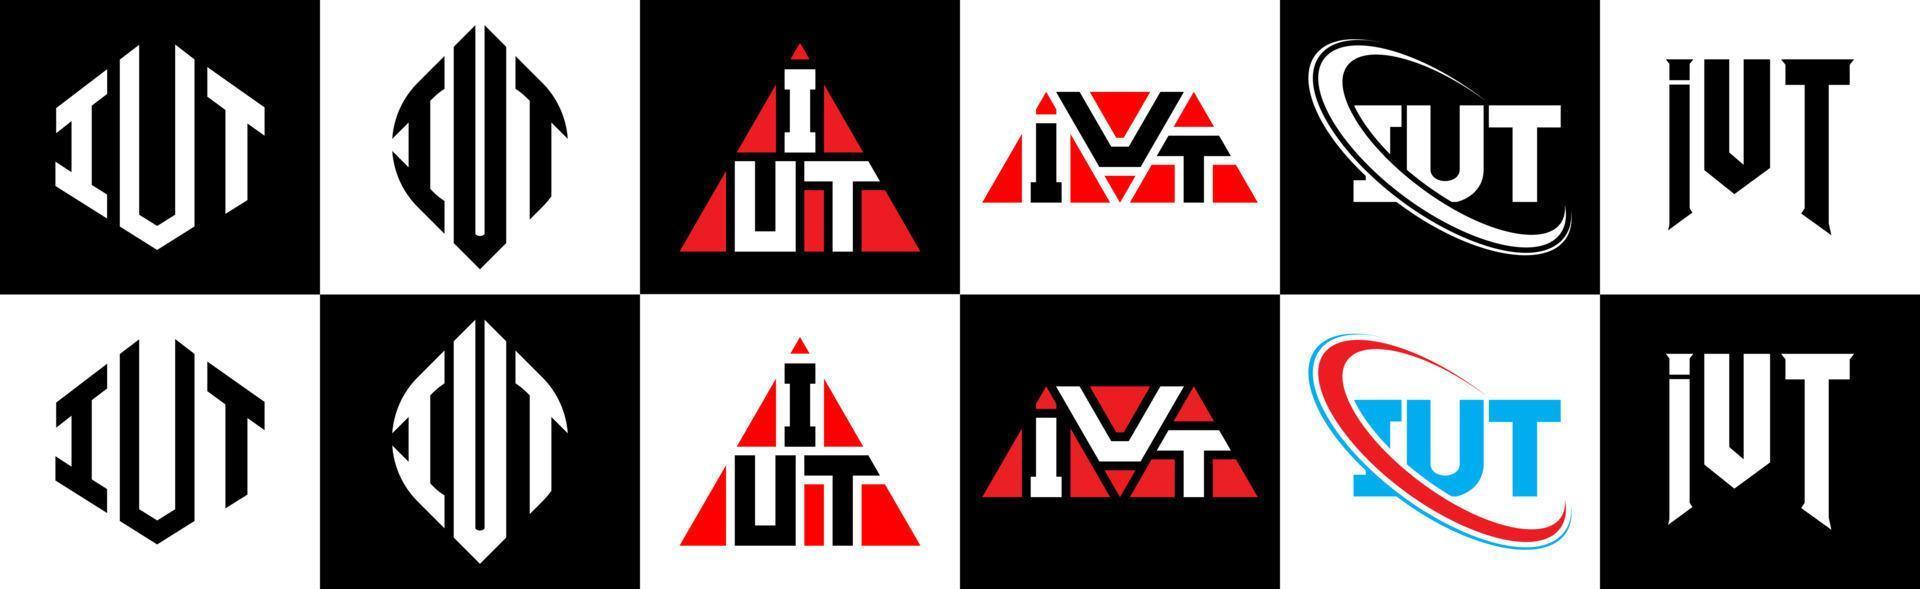 création de logo de lettre iut en six styles. iut polygone, cercle, triangle, hexagone, style plat et simple avec logo de lettre de variation de couleur noir et blanc dans un plan de travail. iut logo minimaliste et classique vecteur